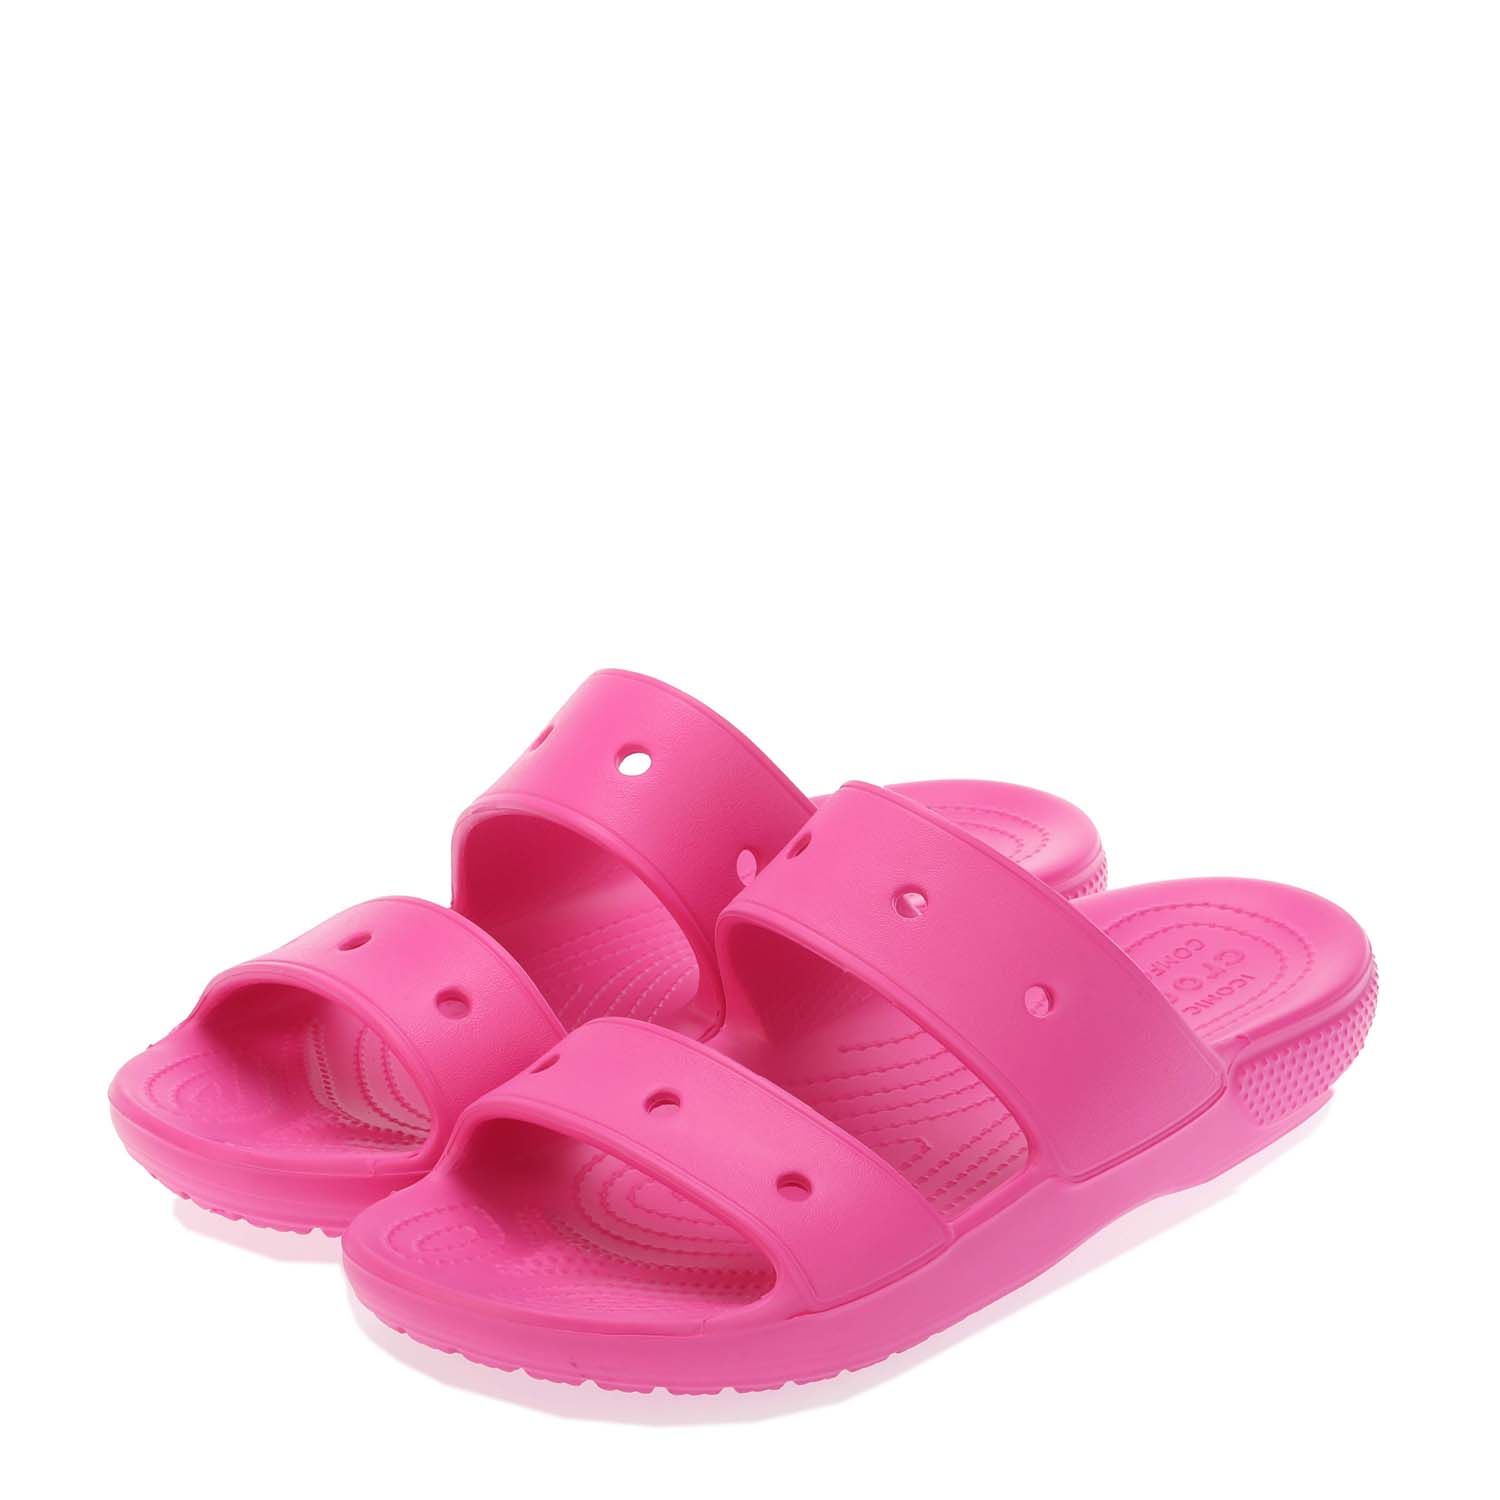 Adults Classic Crocs Slide Sandal